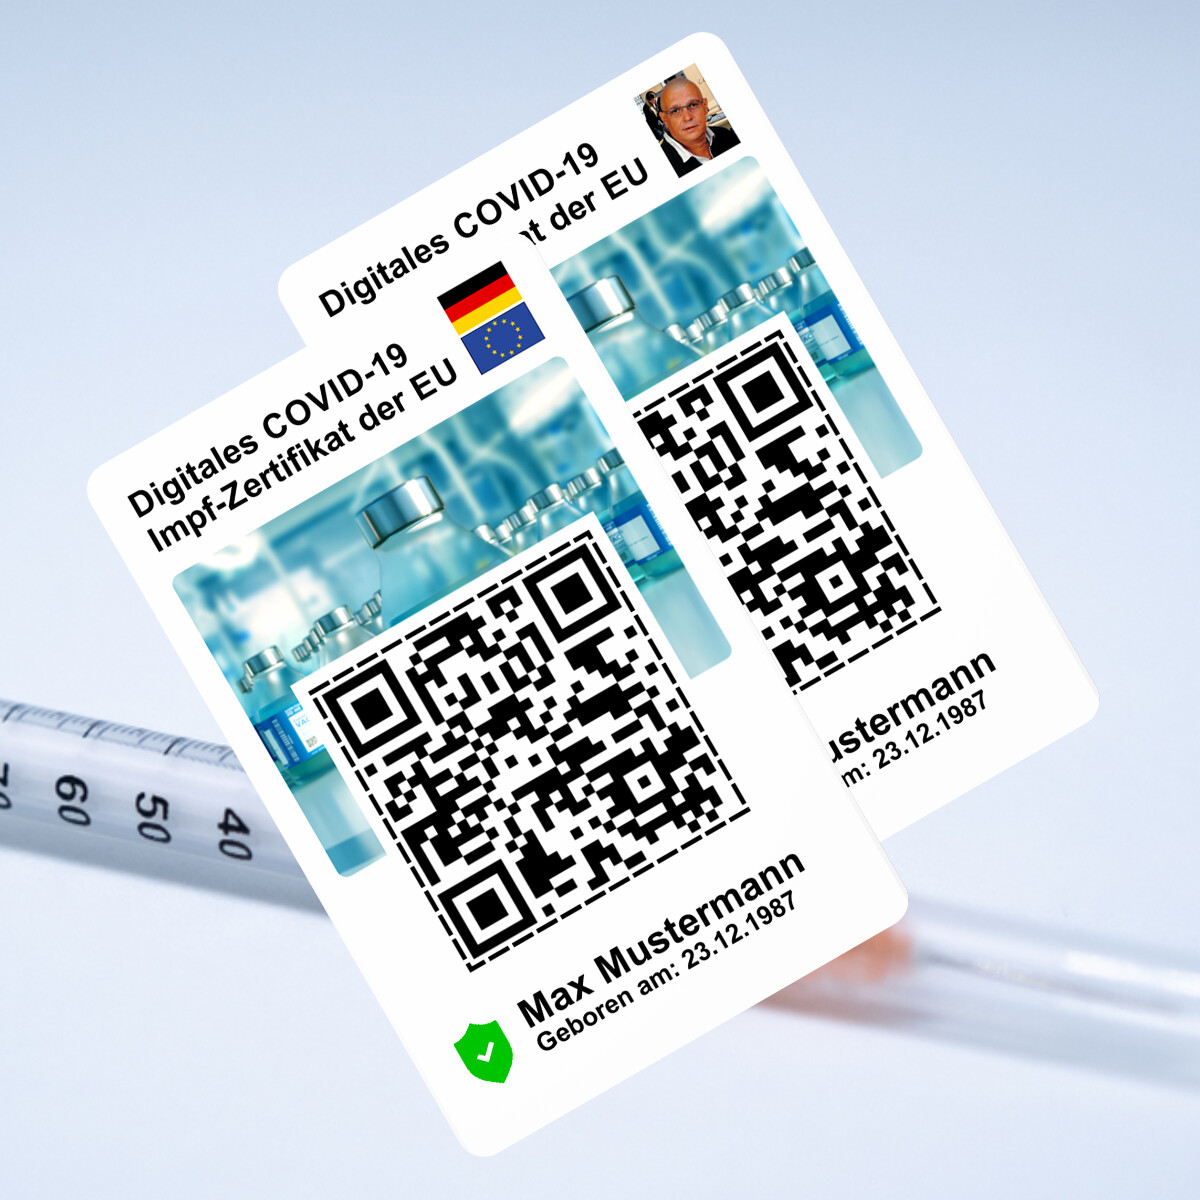 Ihr digitales COVID-19 Impf-Zertifikat der EU - Wahlweise mit oder ohne Lichtbild - auf eine Plastikkarte im Kreditkartenformat drucken lassen